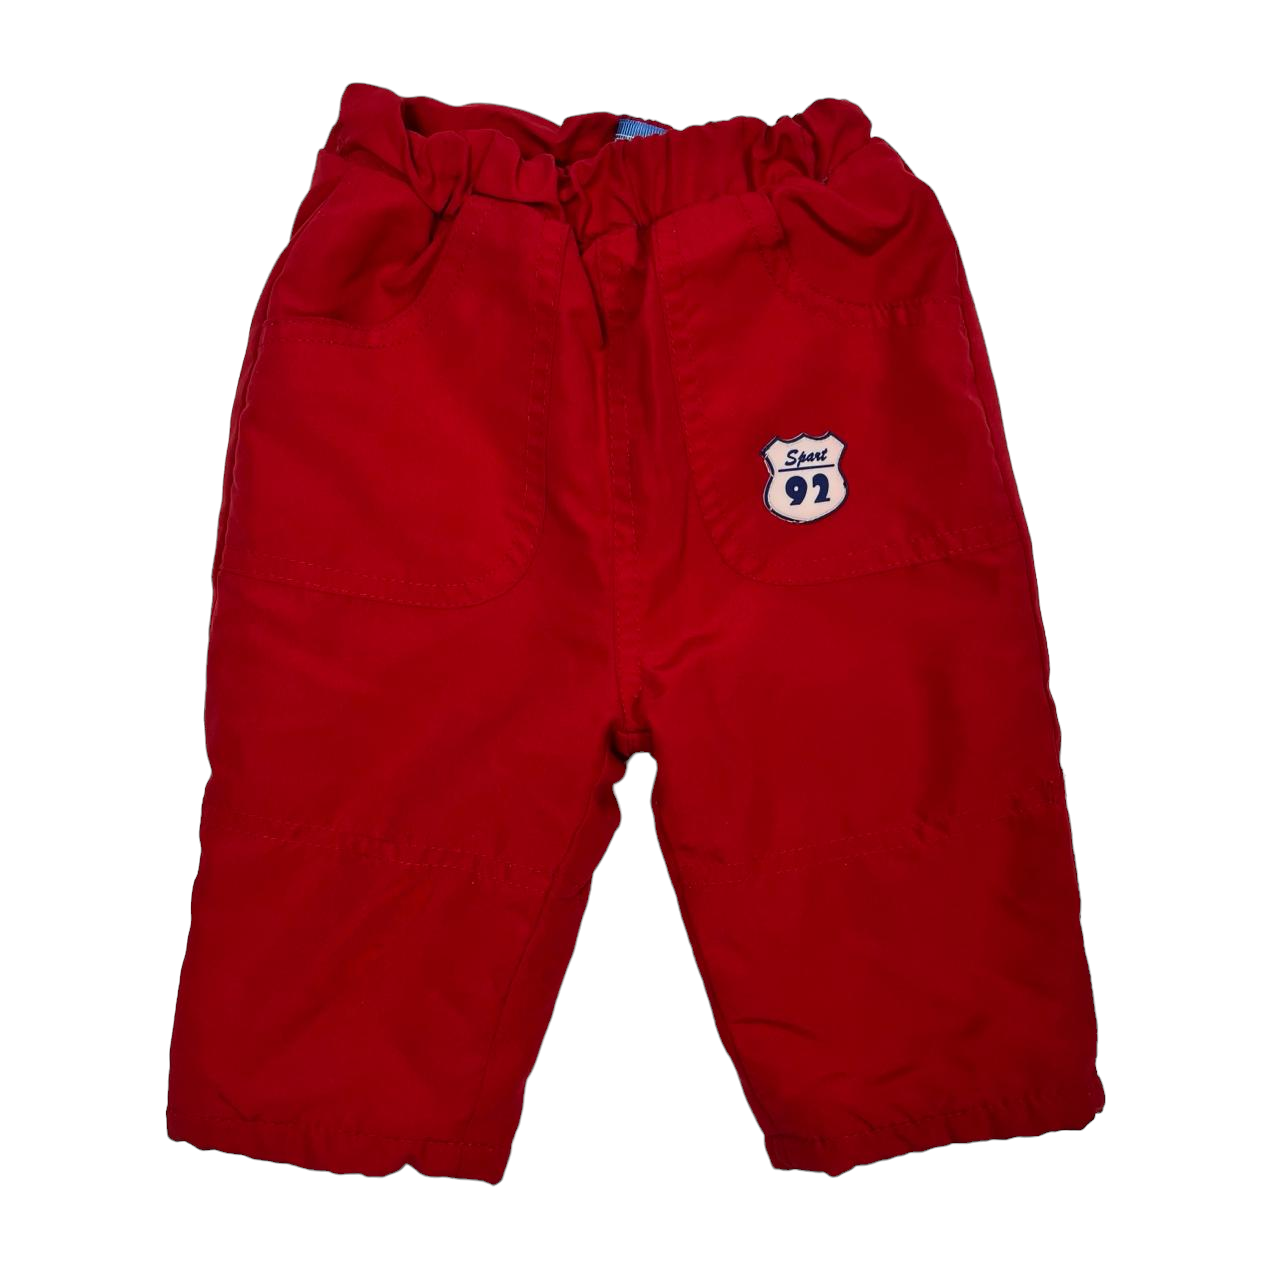 Pantalon forrado rojo termico